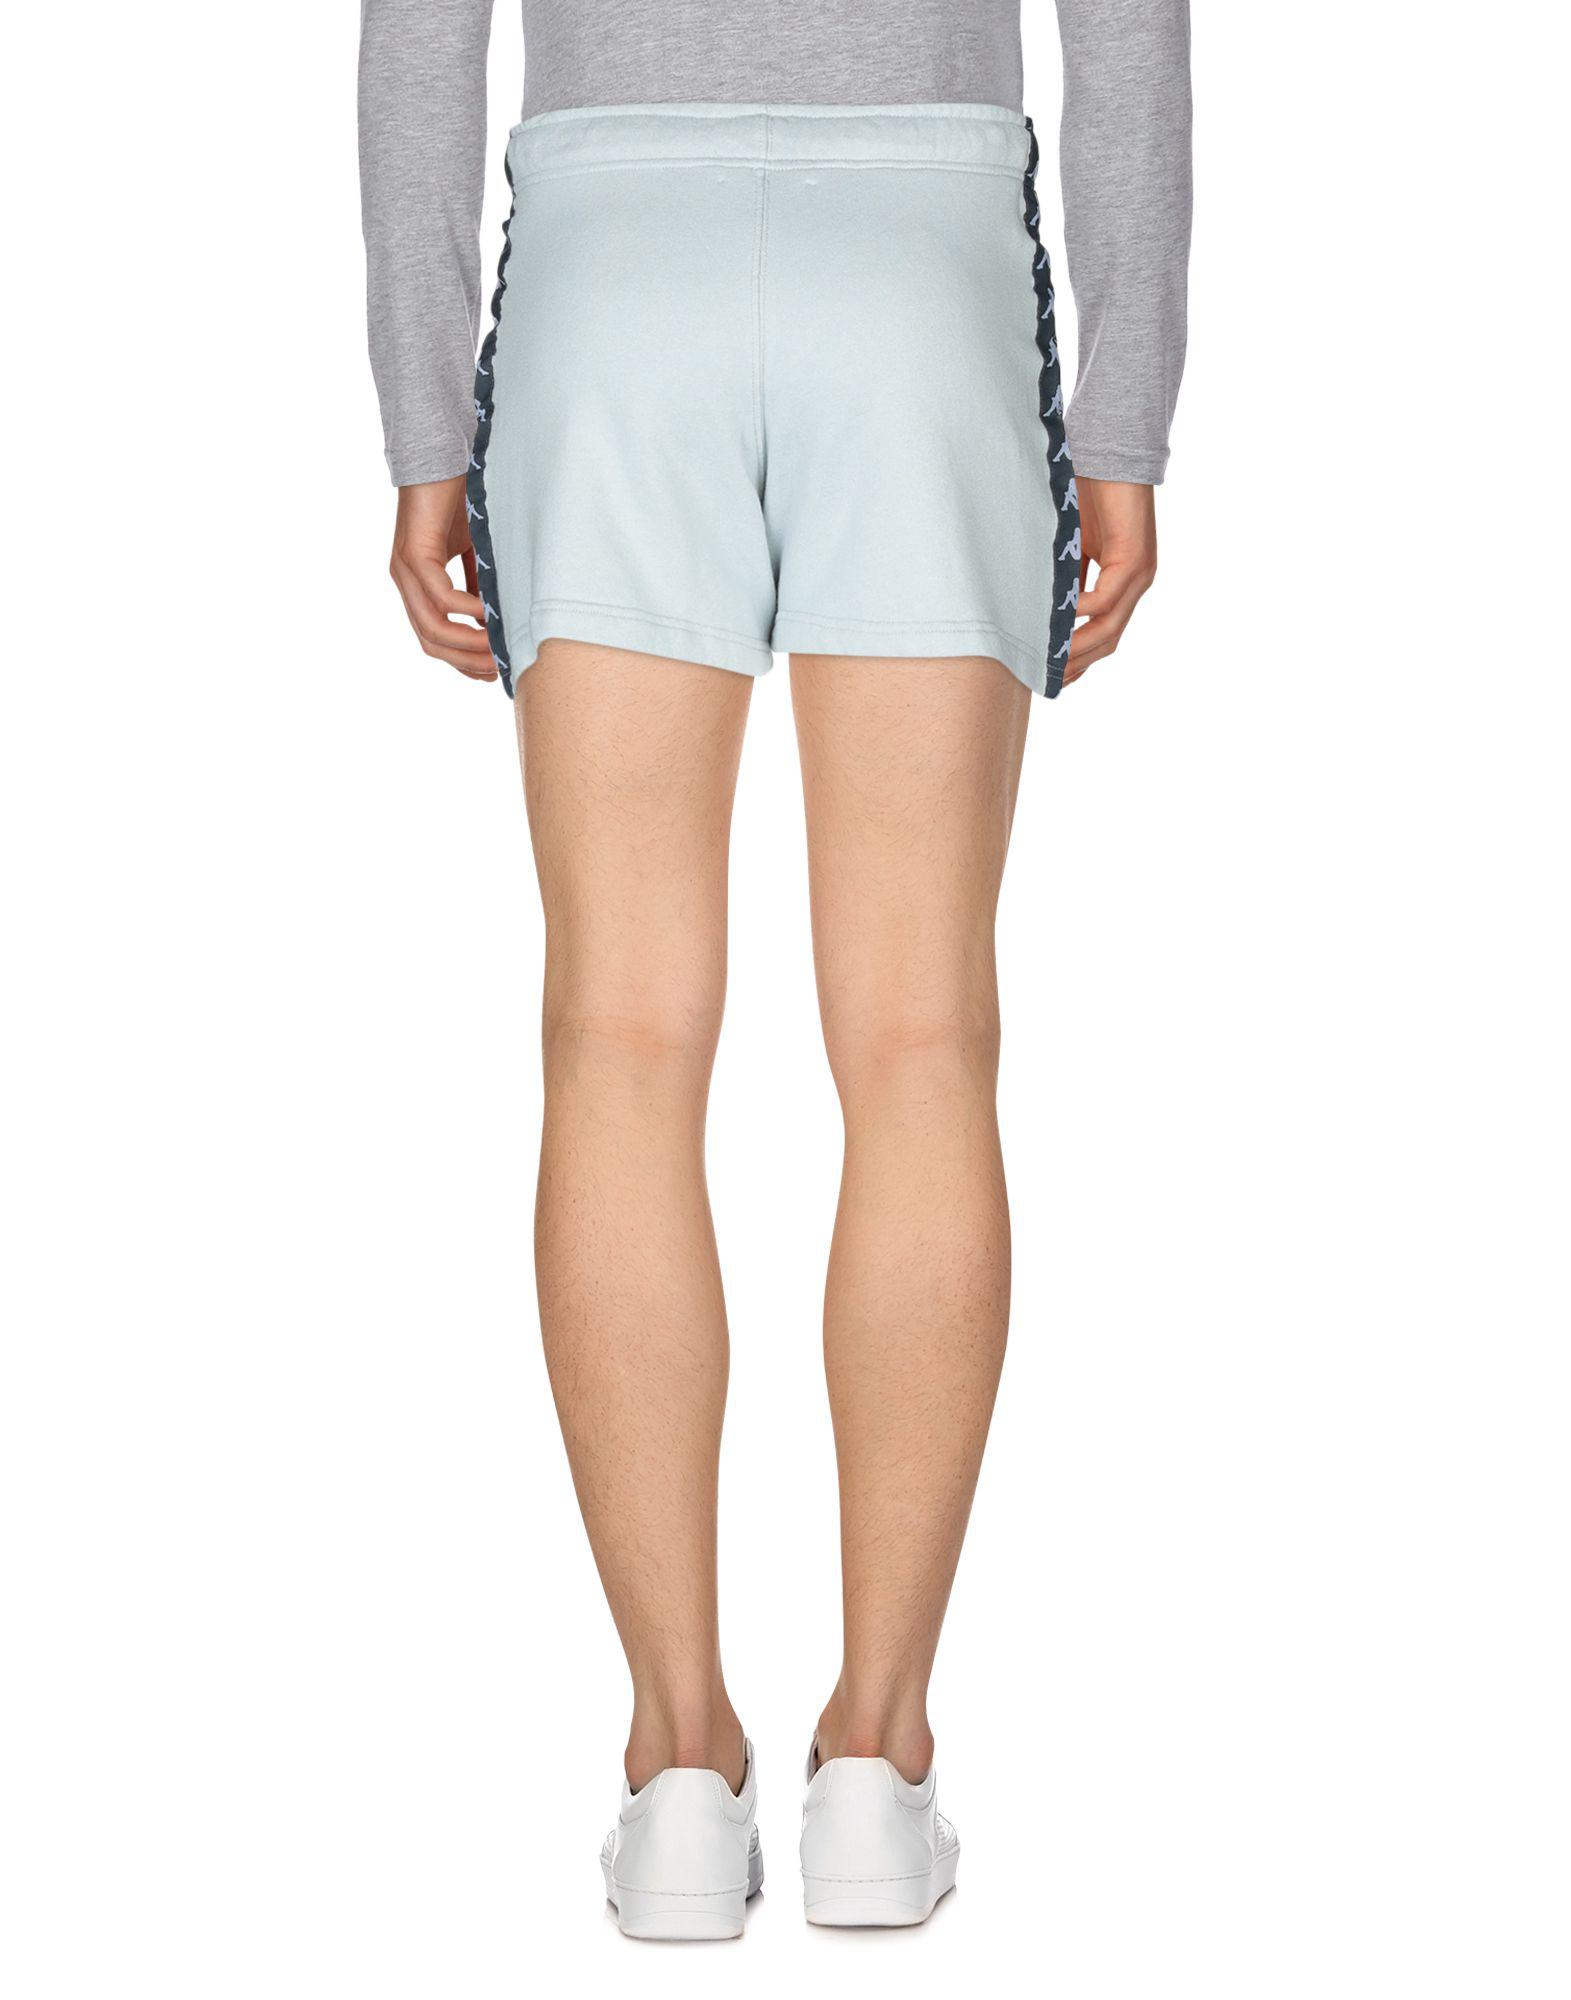 Kappa Fleece Shorts in Sky Blue (Blue) for Men - Lyst